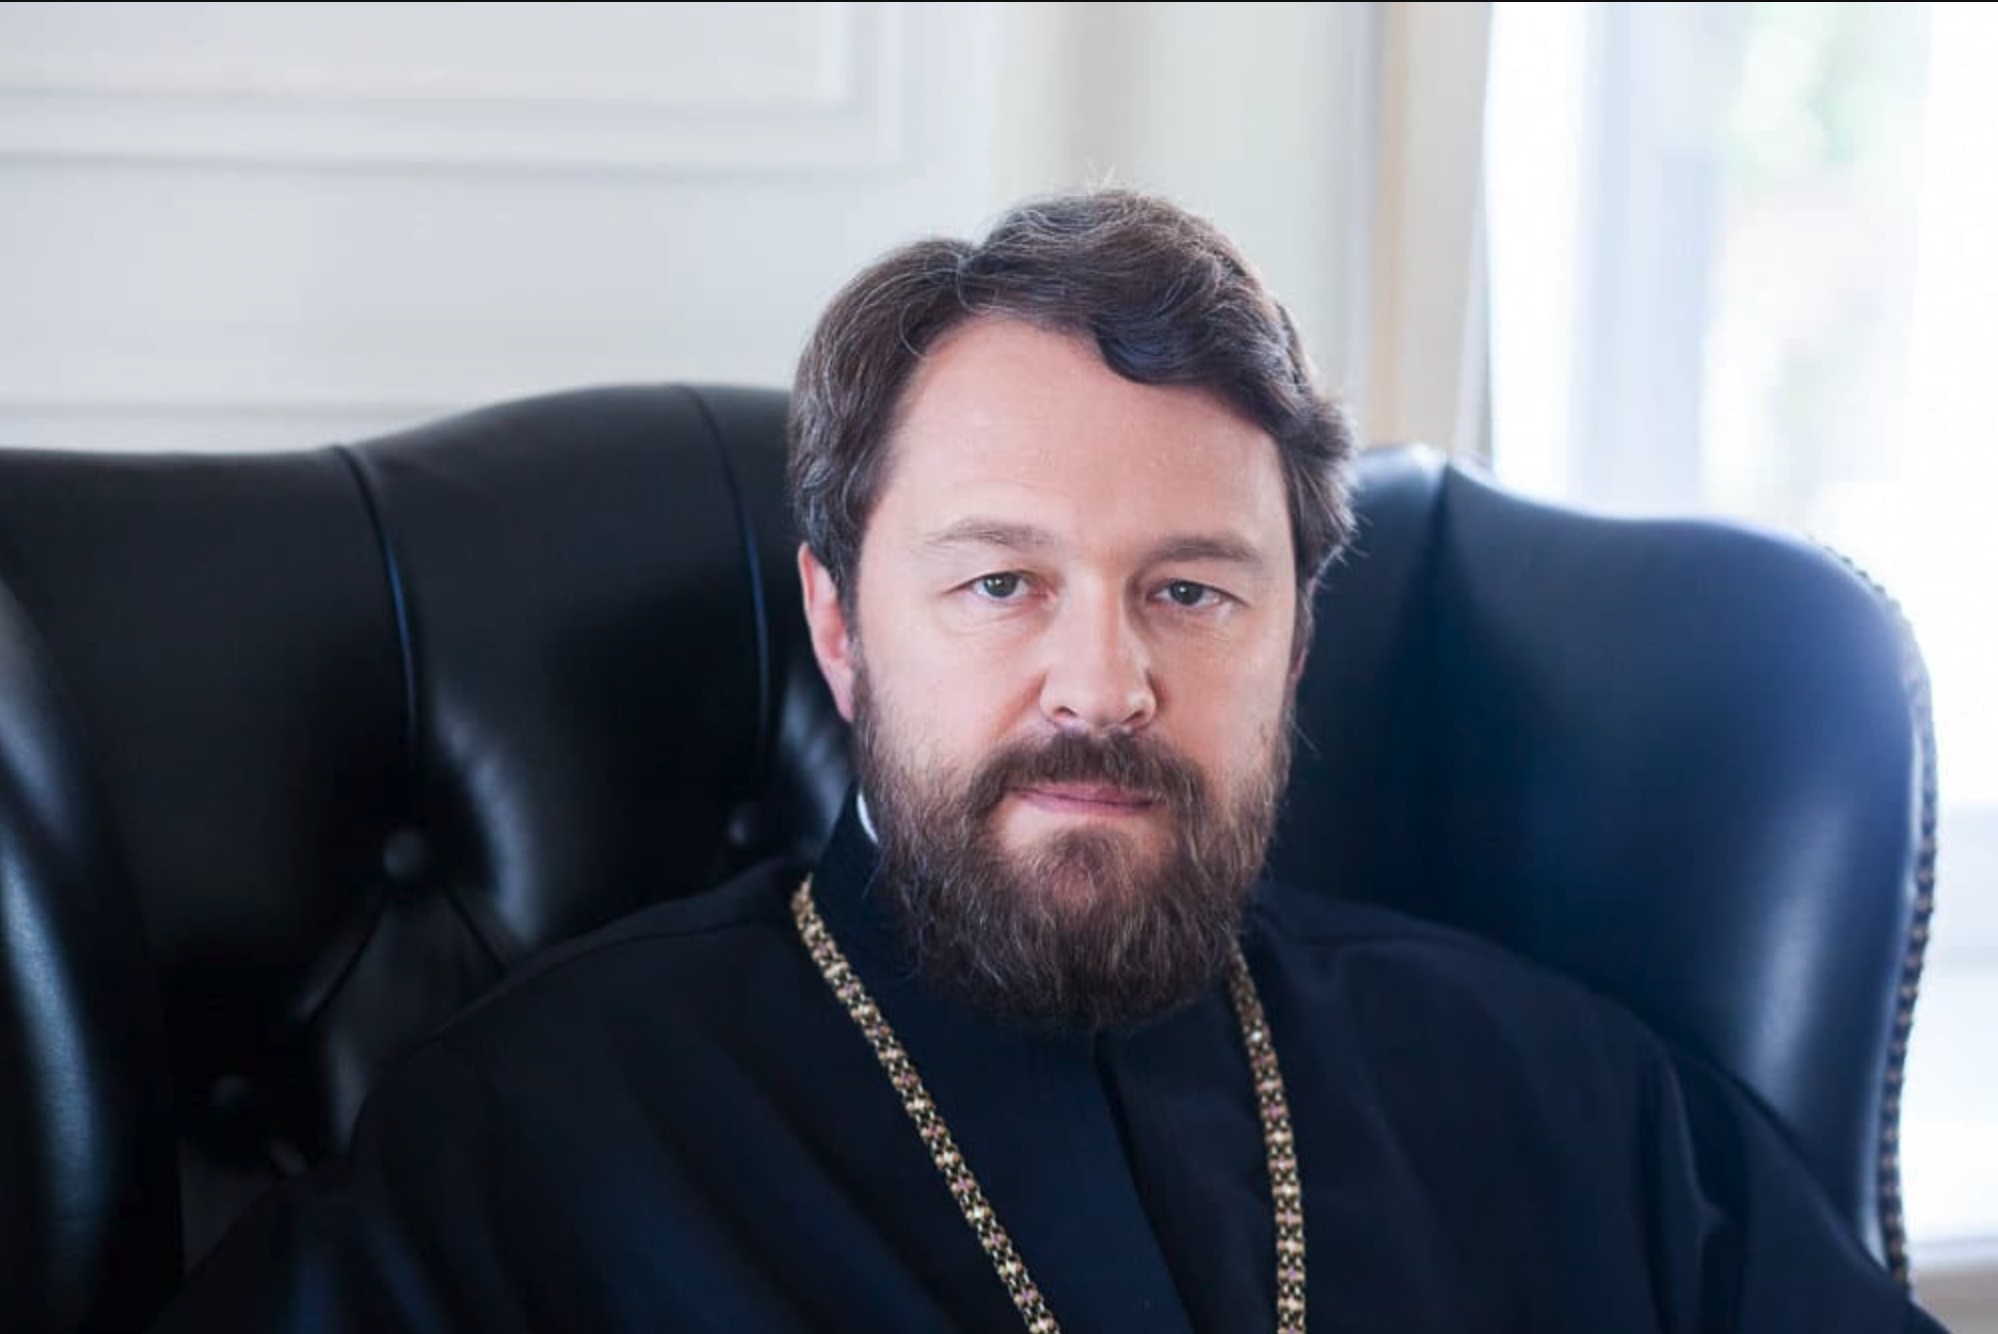 Le métropolite Hilarion de Volokolamsk : “La primauté, dans l’Église orthodoxe, doit être équilibrée par la conciliarité.”